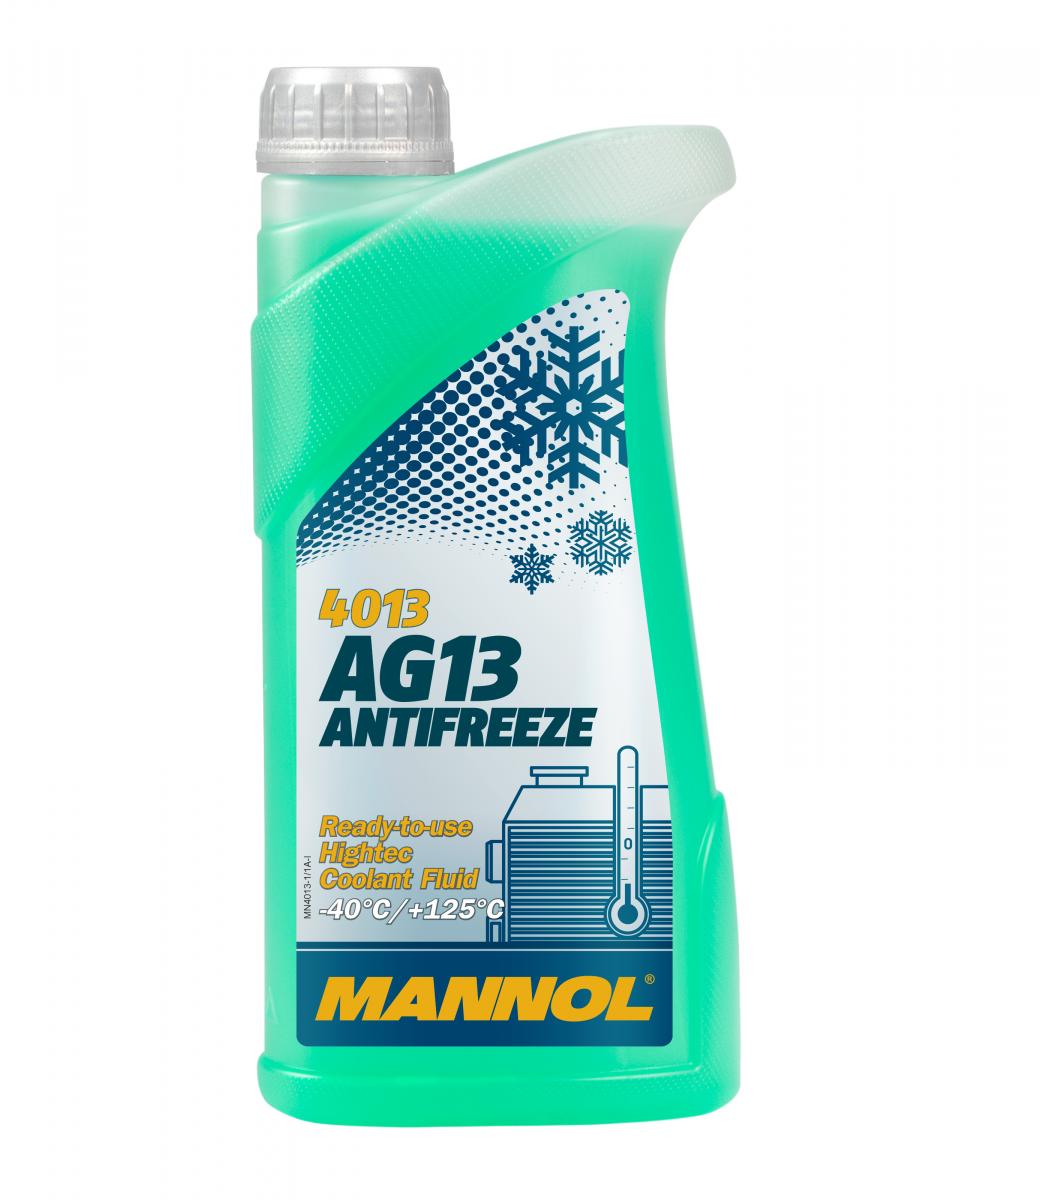 1 Liter MANNOL Kühlflüssigkeit Antifreeze AG13 -40°C BMW , DAF, FORD AF Plus